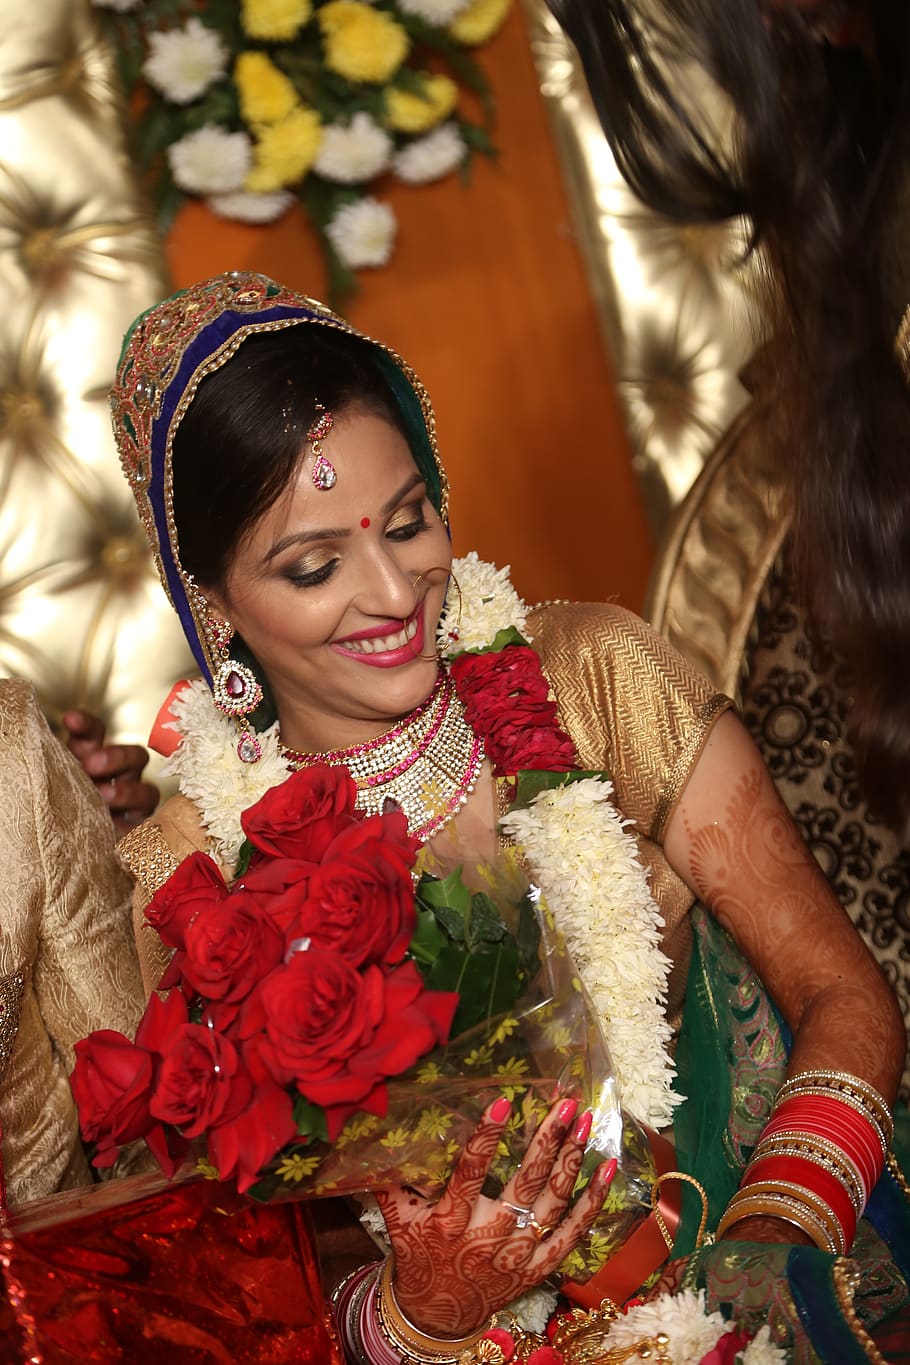 noiva, casamento, indiano, sorrindo, roupas tradicionais, pessoas reais, felicidade, celebração, roupas, flor